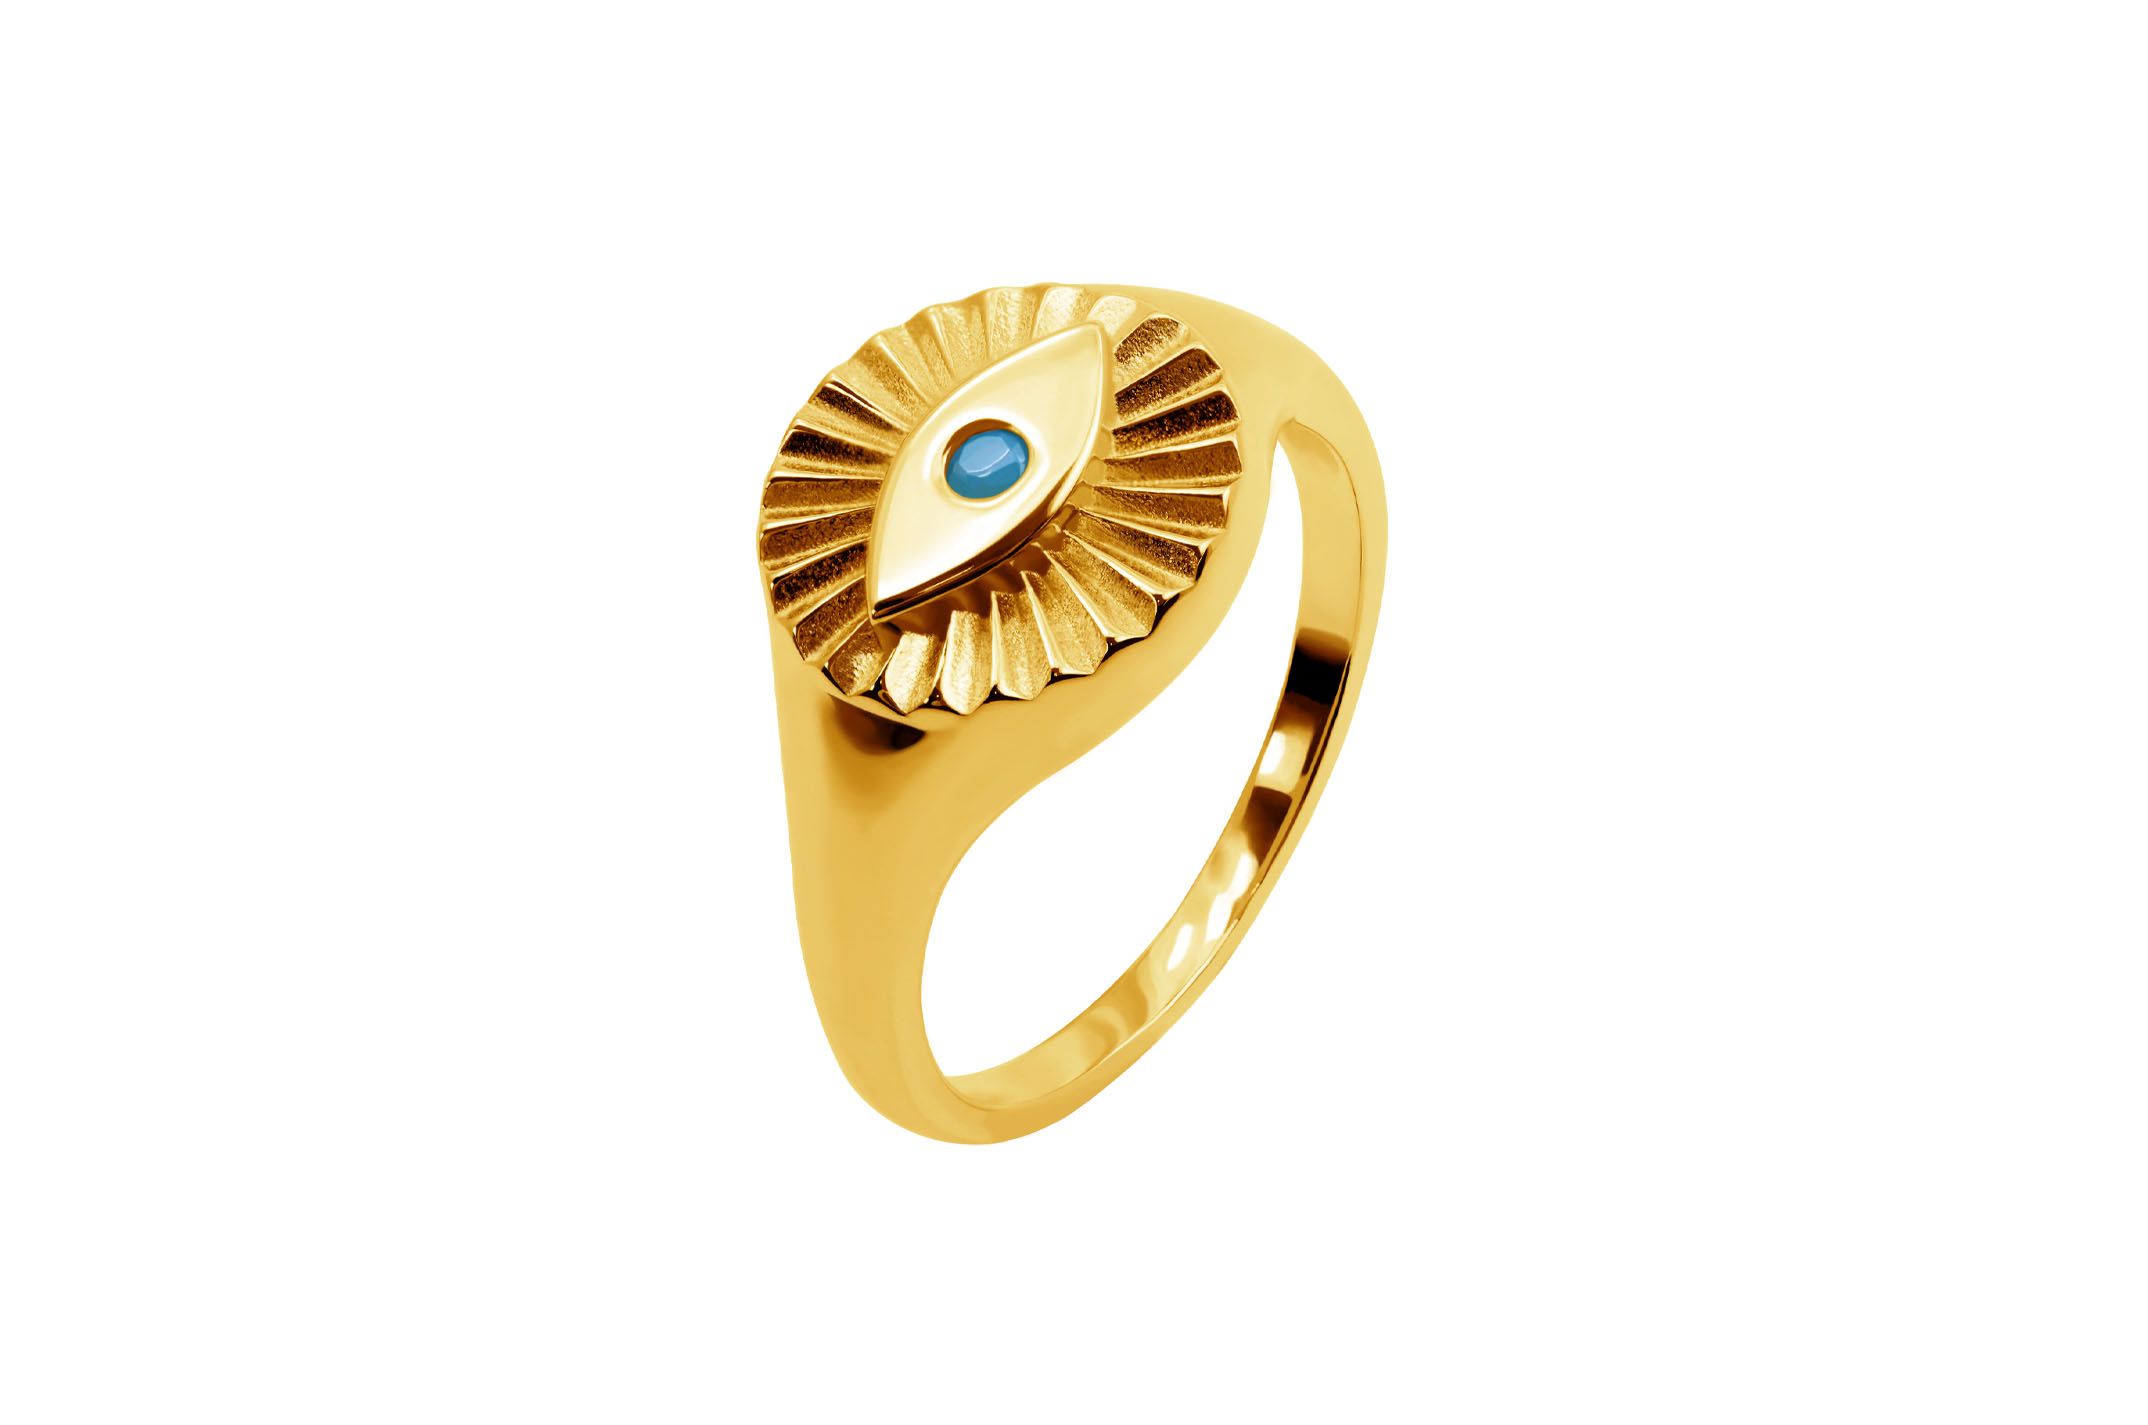 Joia: anel;Material: prata 925;Peso: 3.1 gr;Pedras: zircónias;Cor: amarelo;Género: mulher